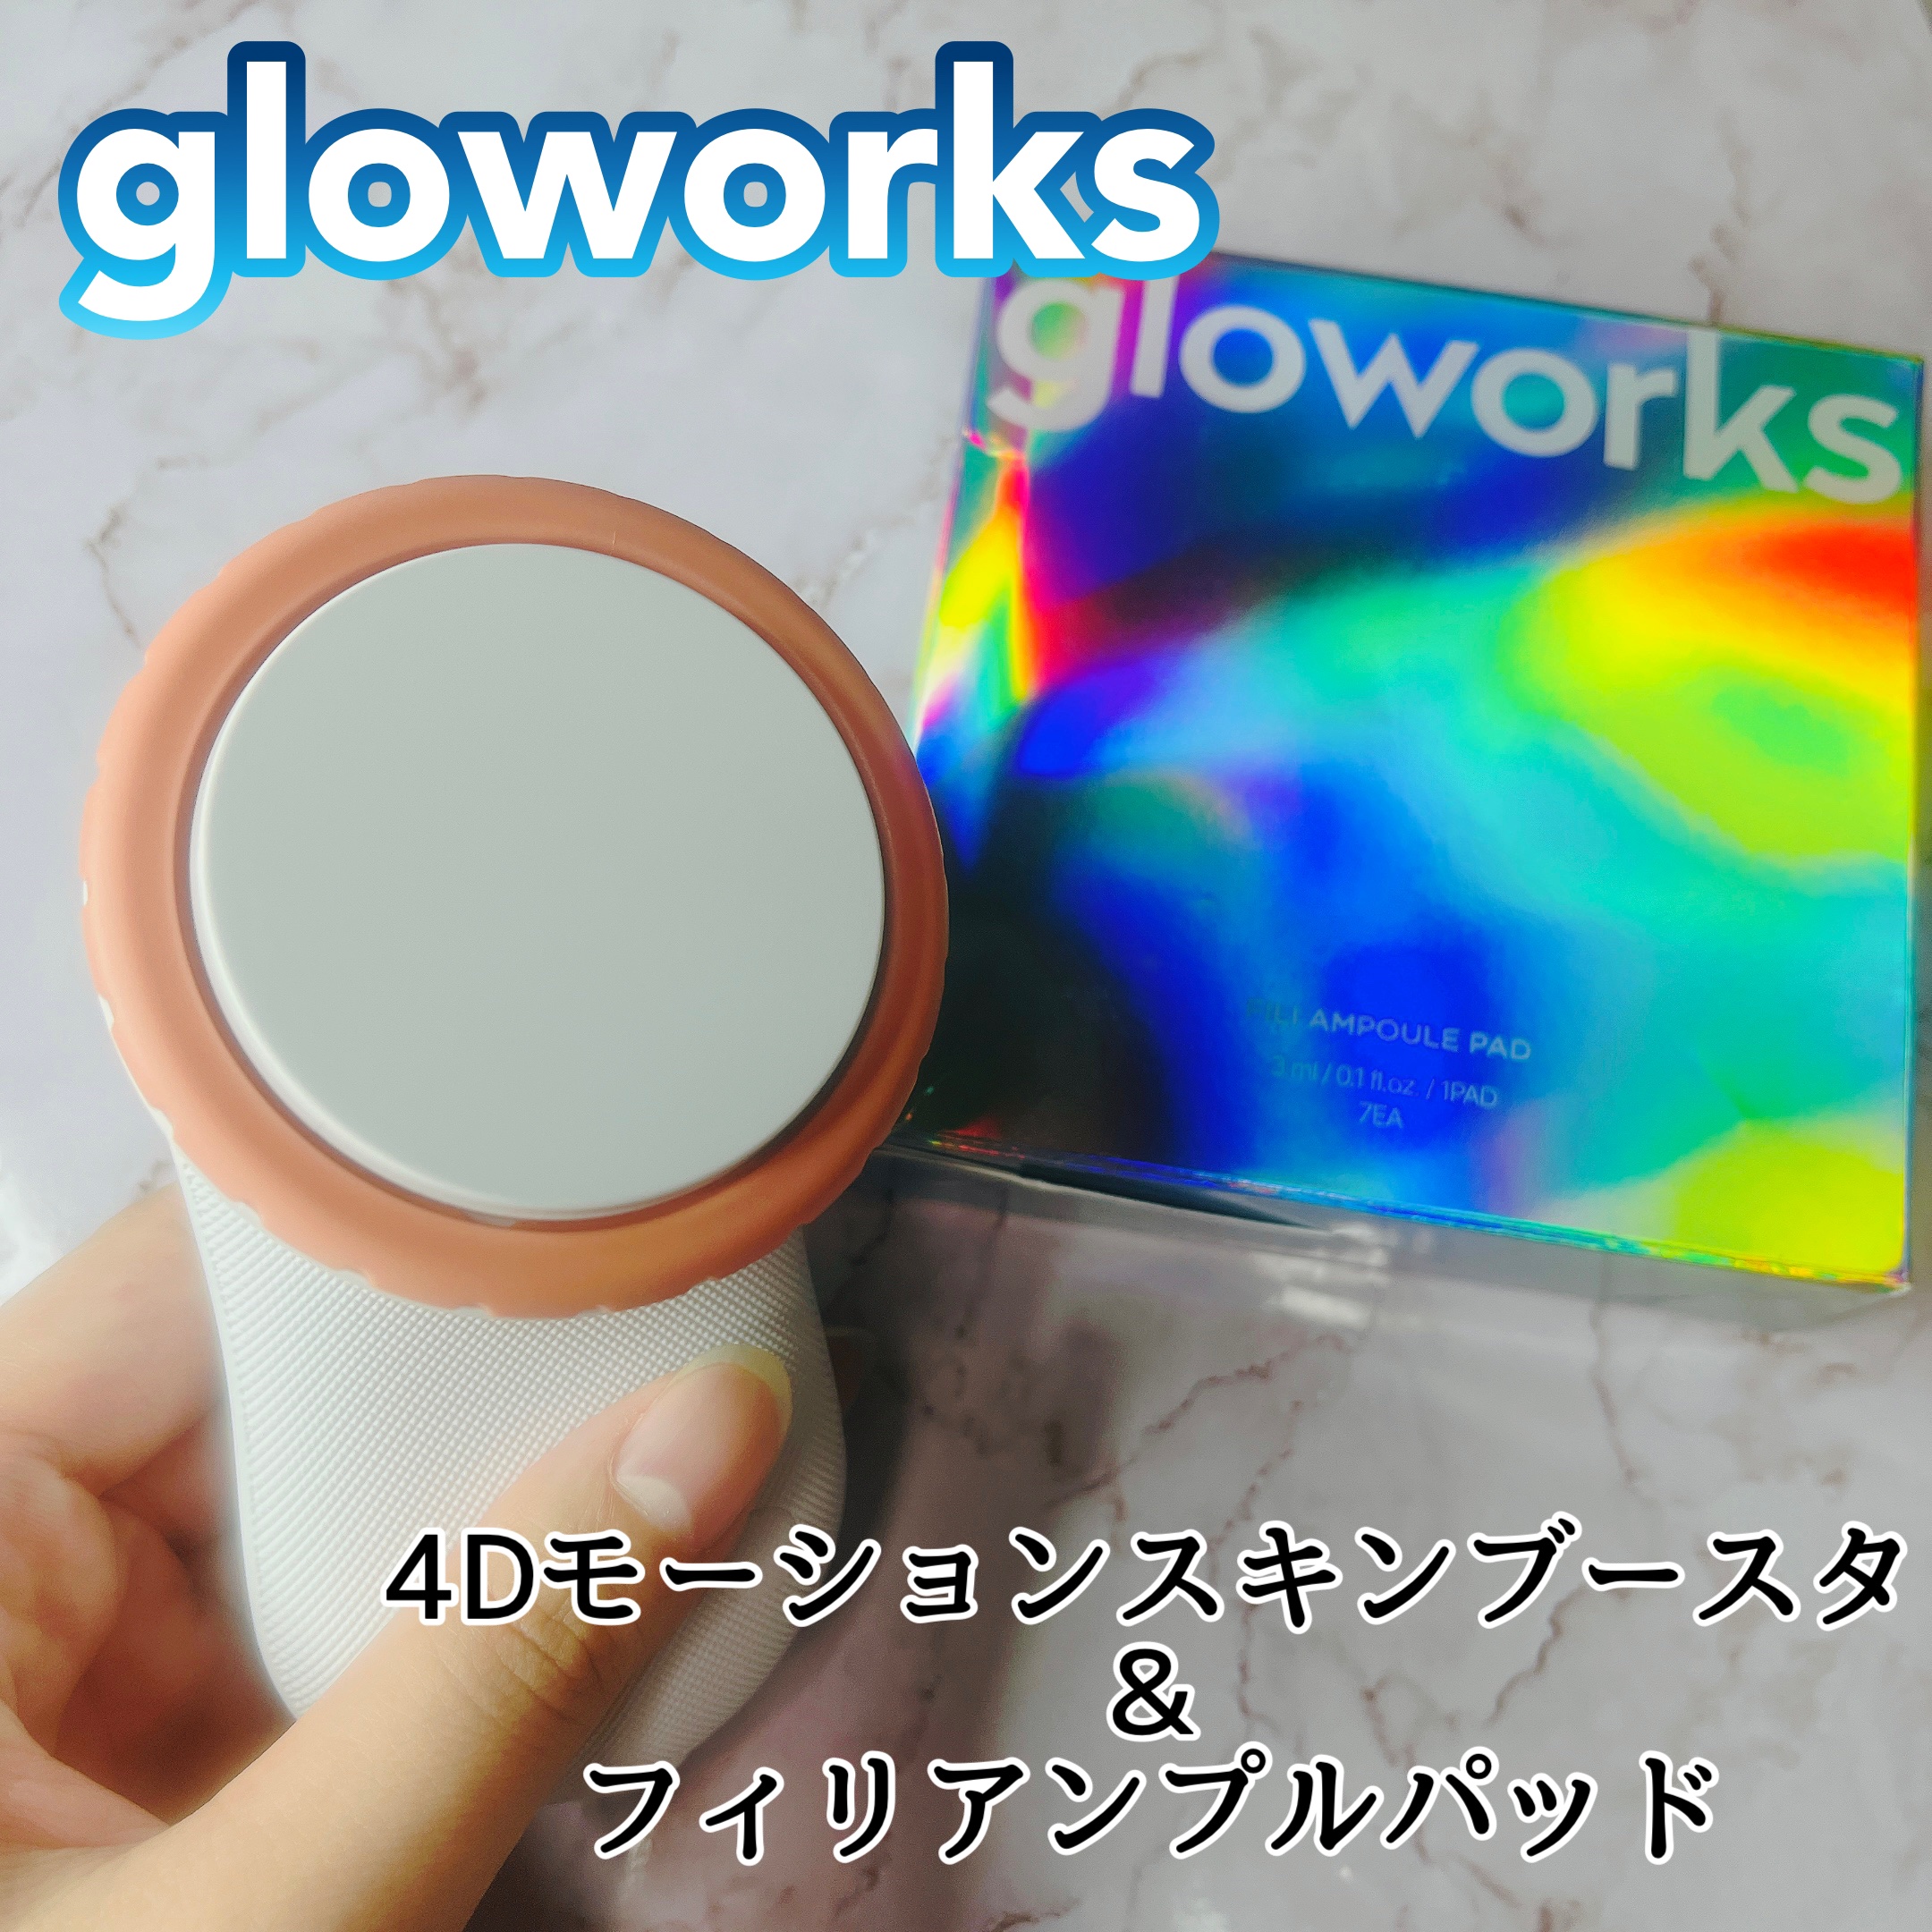 正規認証品!新規格 gloworks 4Dモーションスキンブースターフィリアンプルパッド